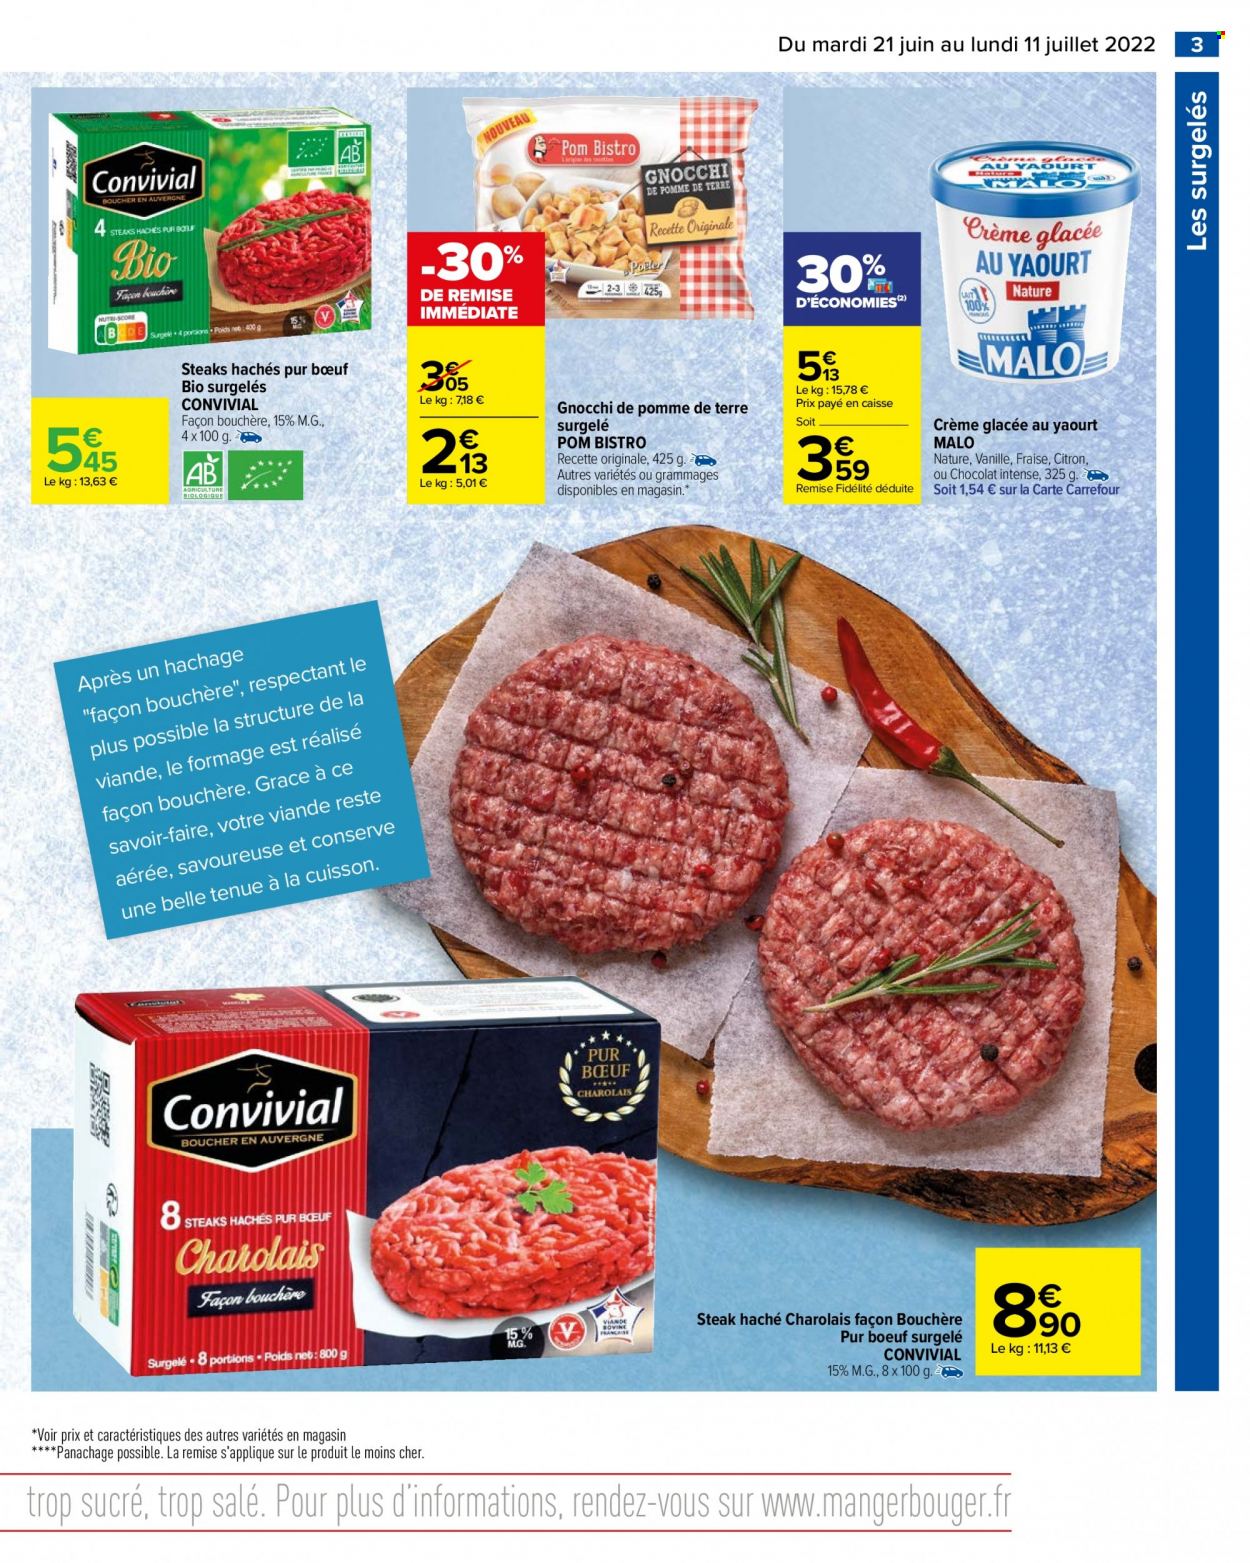 thumbnail - Catalogue Carrefour Hypermarchés - 21/06/2022 - 11/07/2022 - Produits soldés - steak haché, viande hachée, gnocchi, Pom Bistro, yaourt, glace. Page 5.